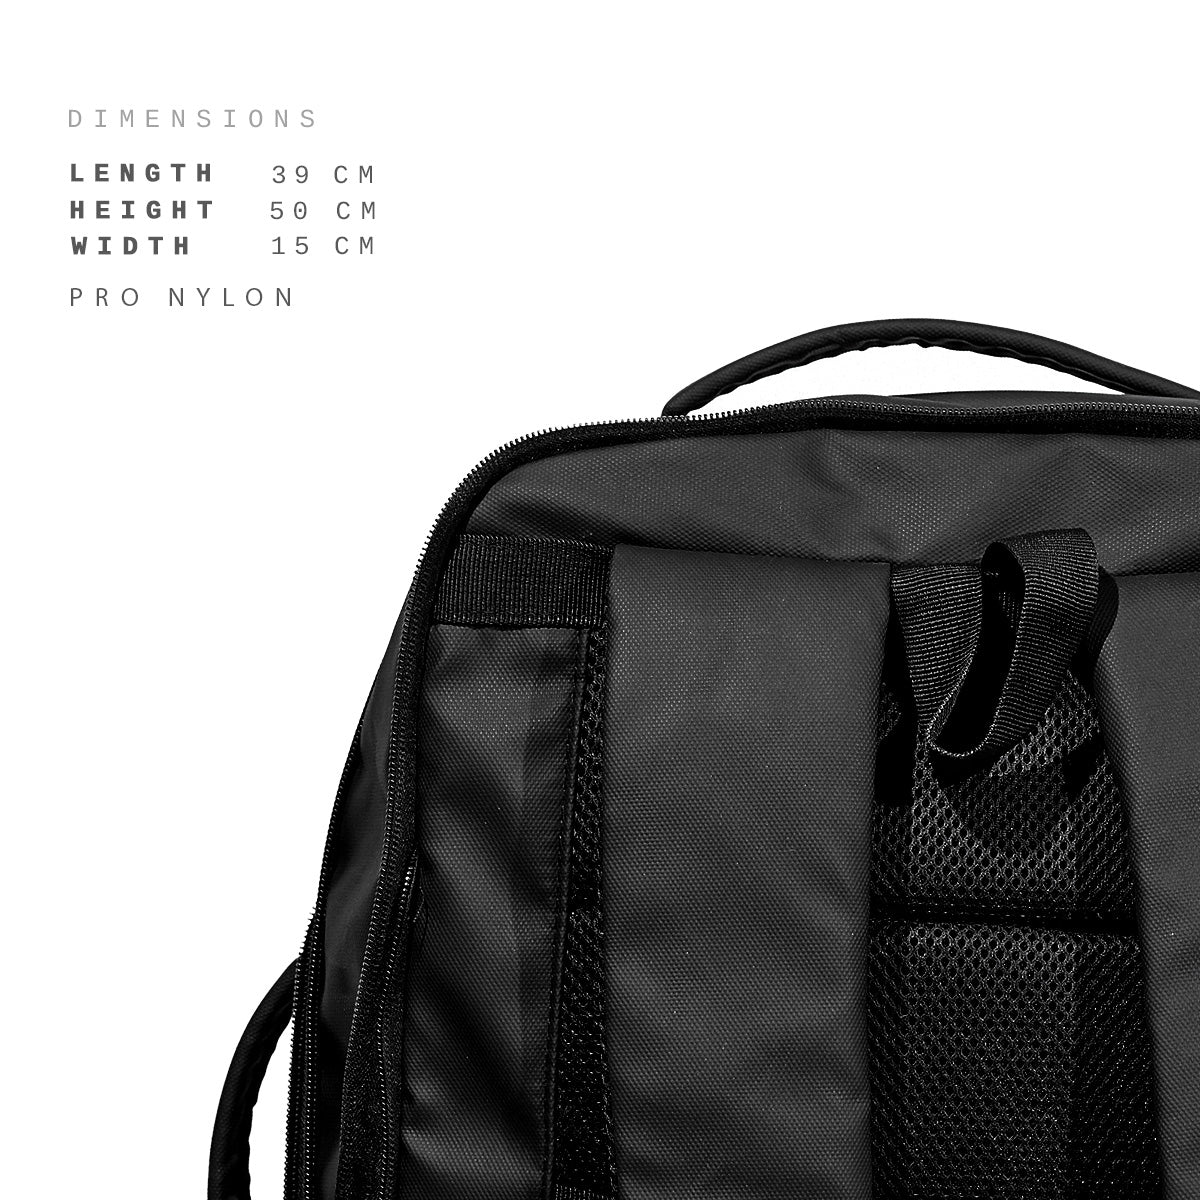 Shigetsu Pro SUWA Nylon Expandable Backpack Laptop Bag